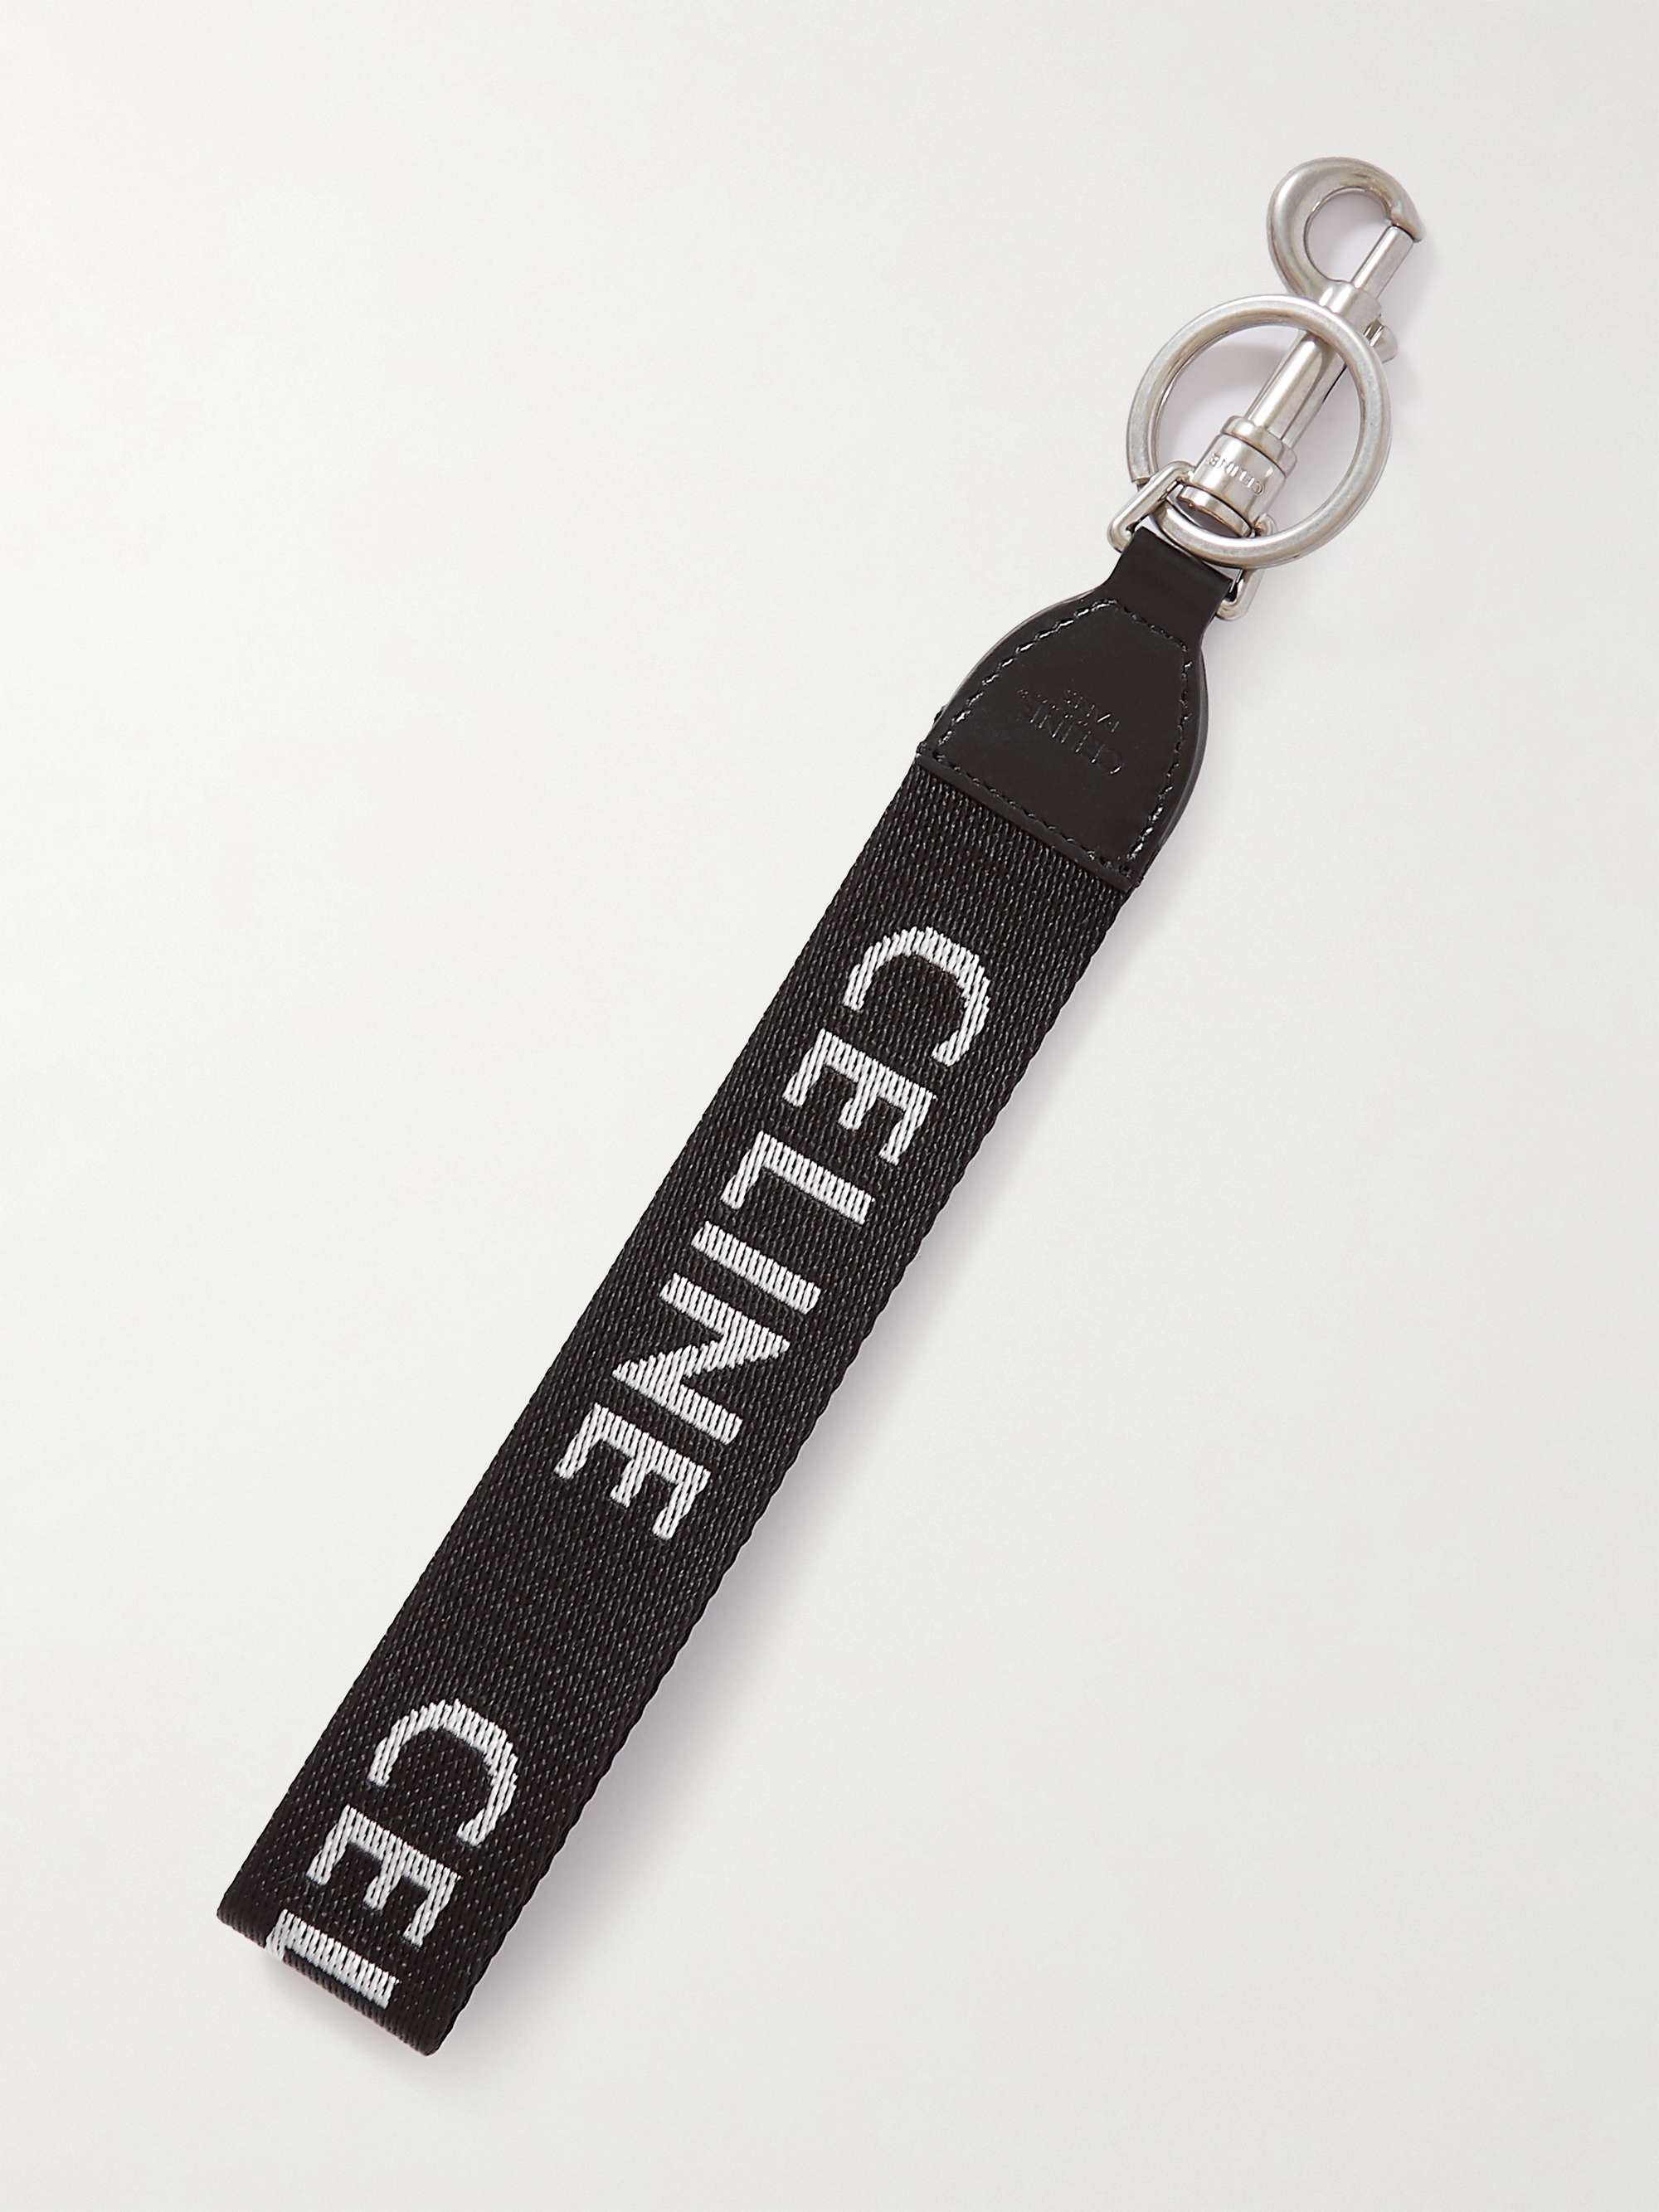 CELINE HOMME Leather-Trimmed Logo-Print Nylon Key Ring | MR PORTER